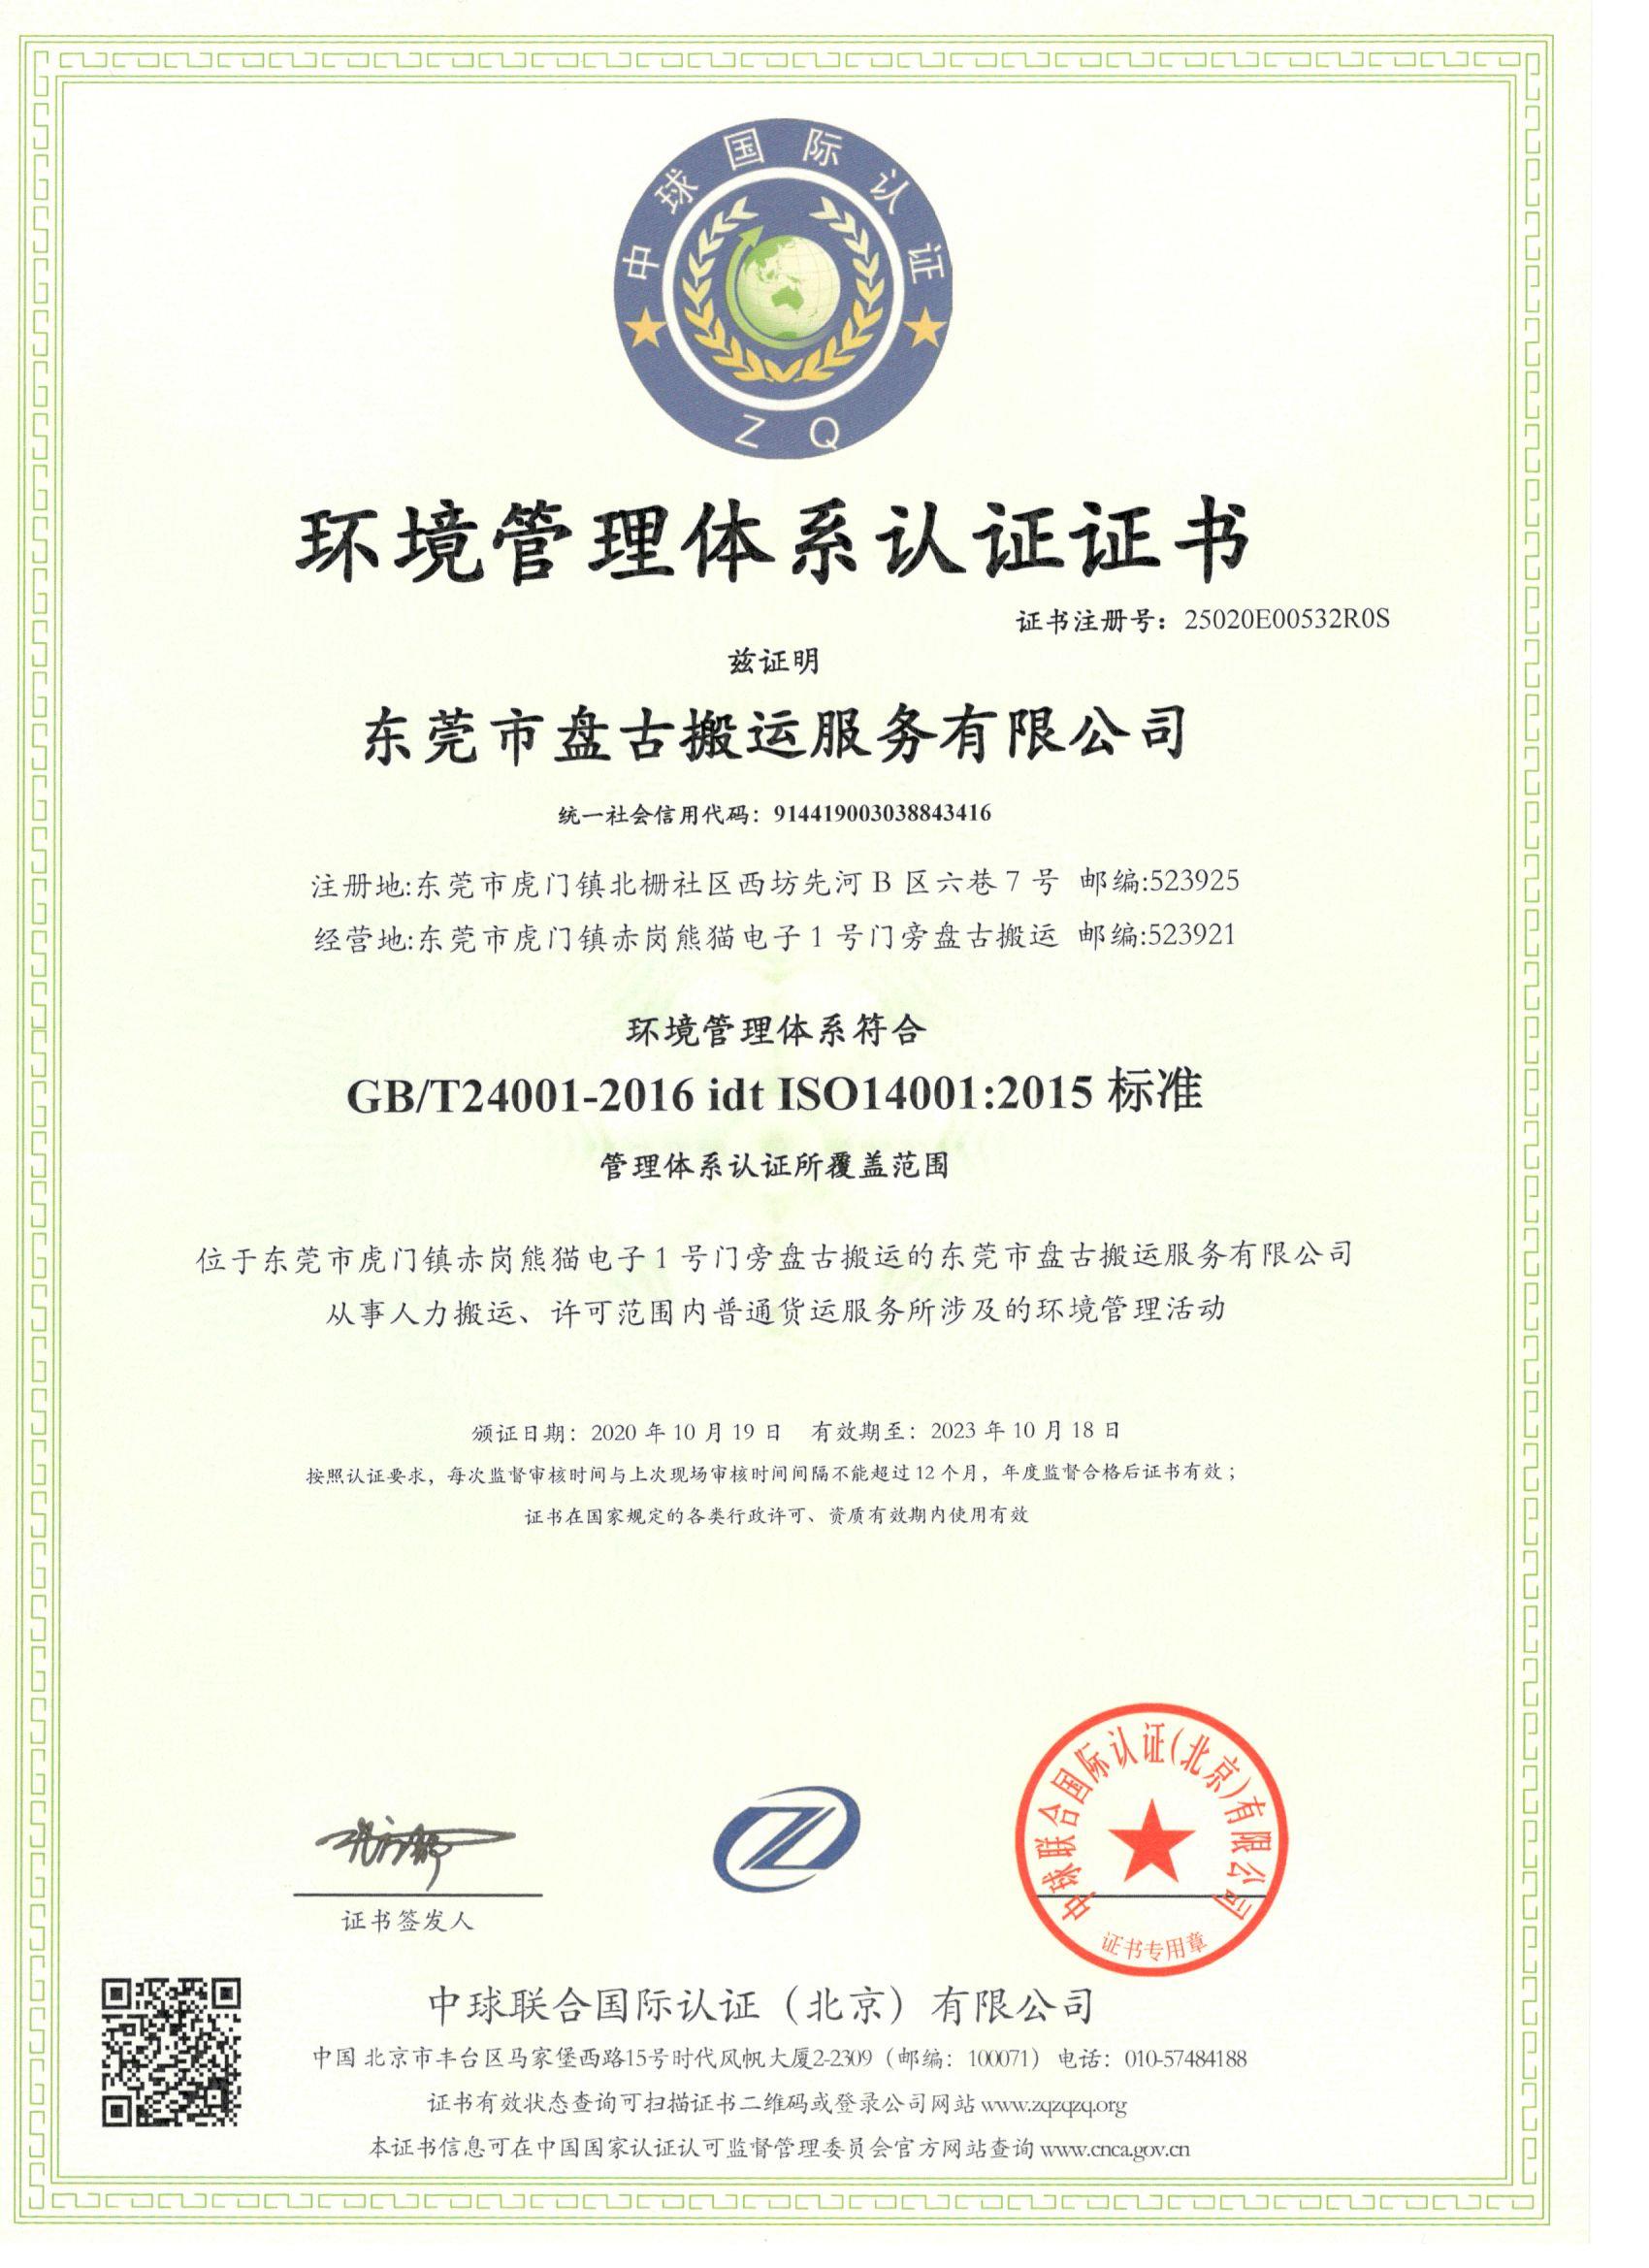 环境管理体系ISO14001认证-东莞市盘古搬运服务有限公司